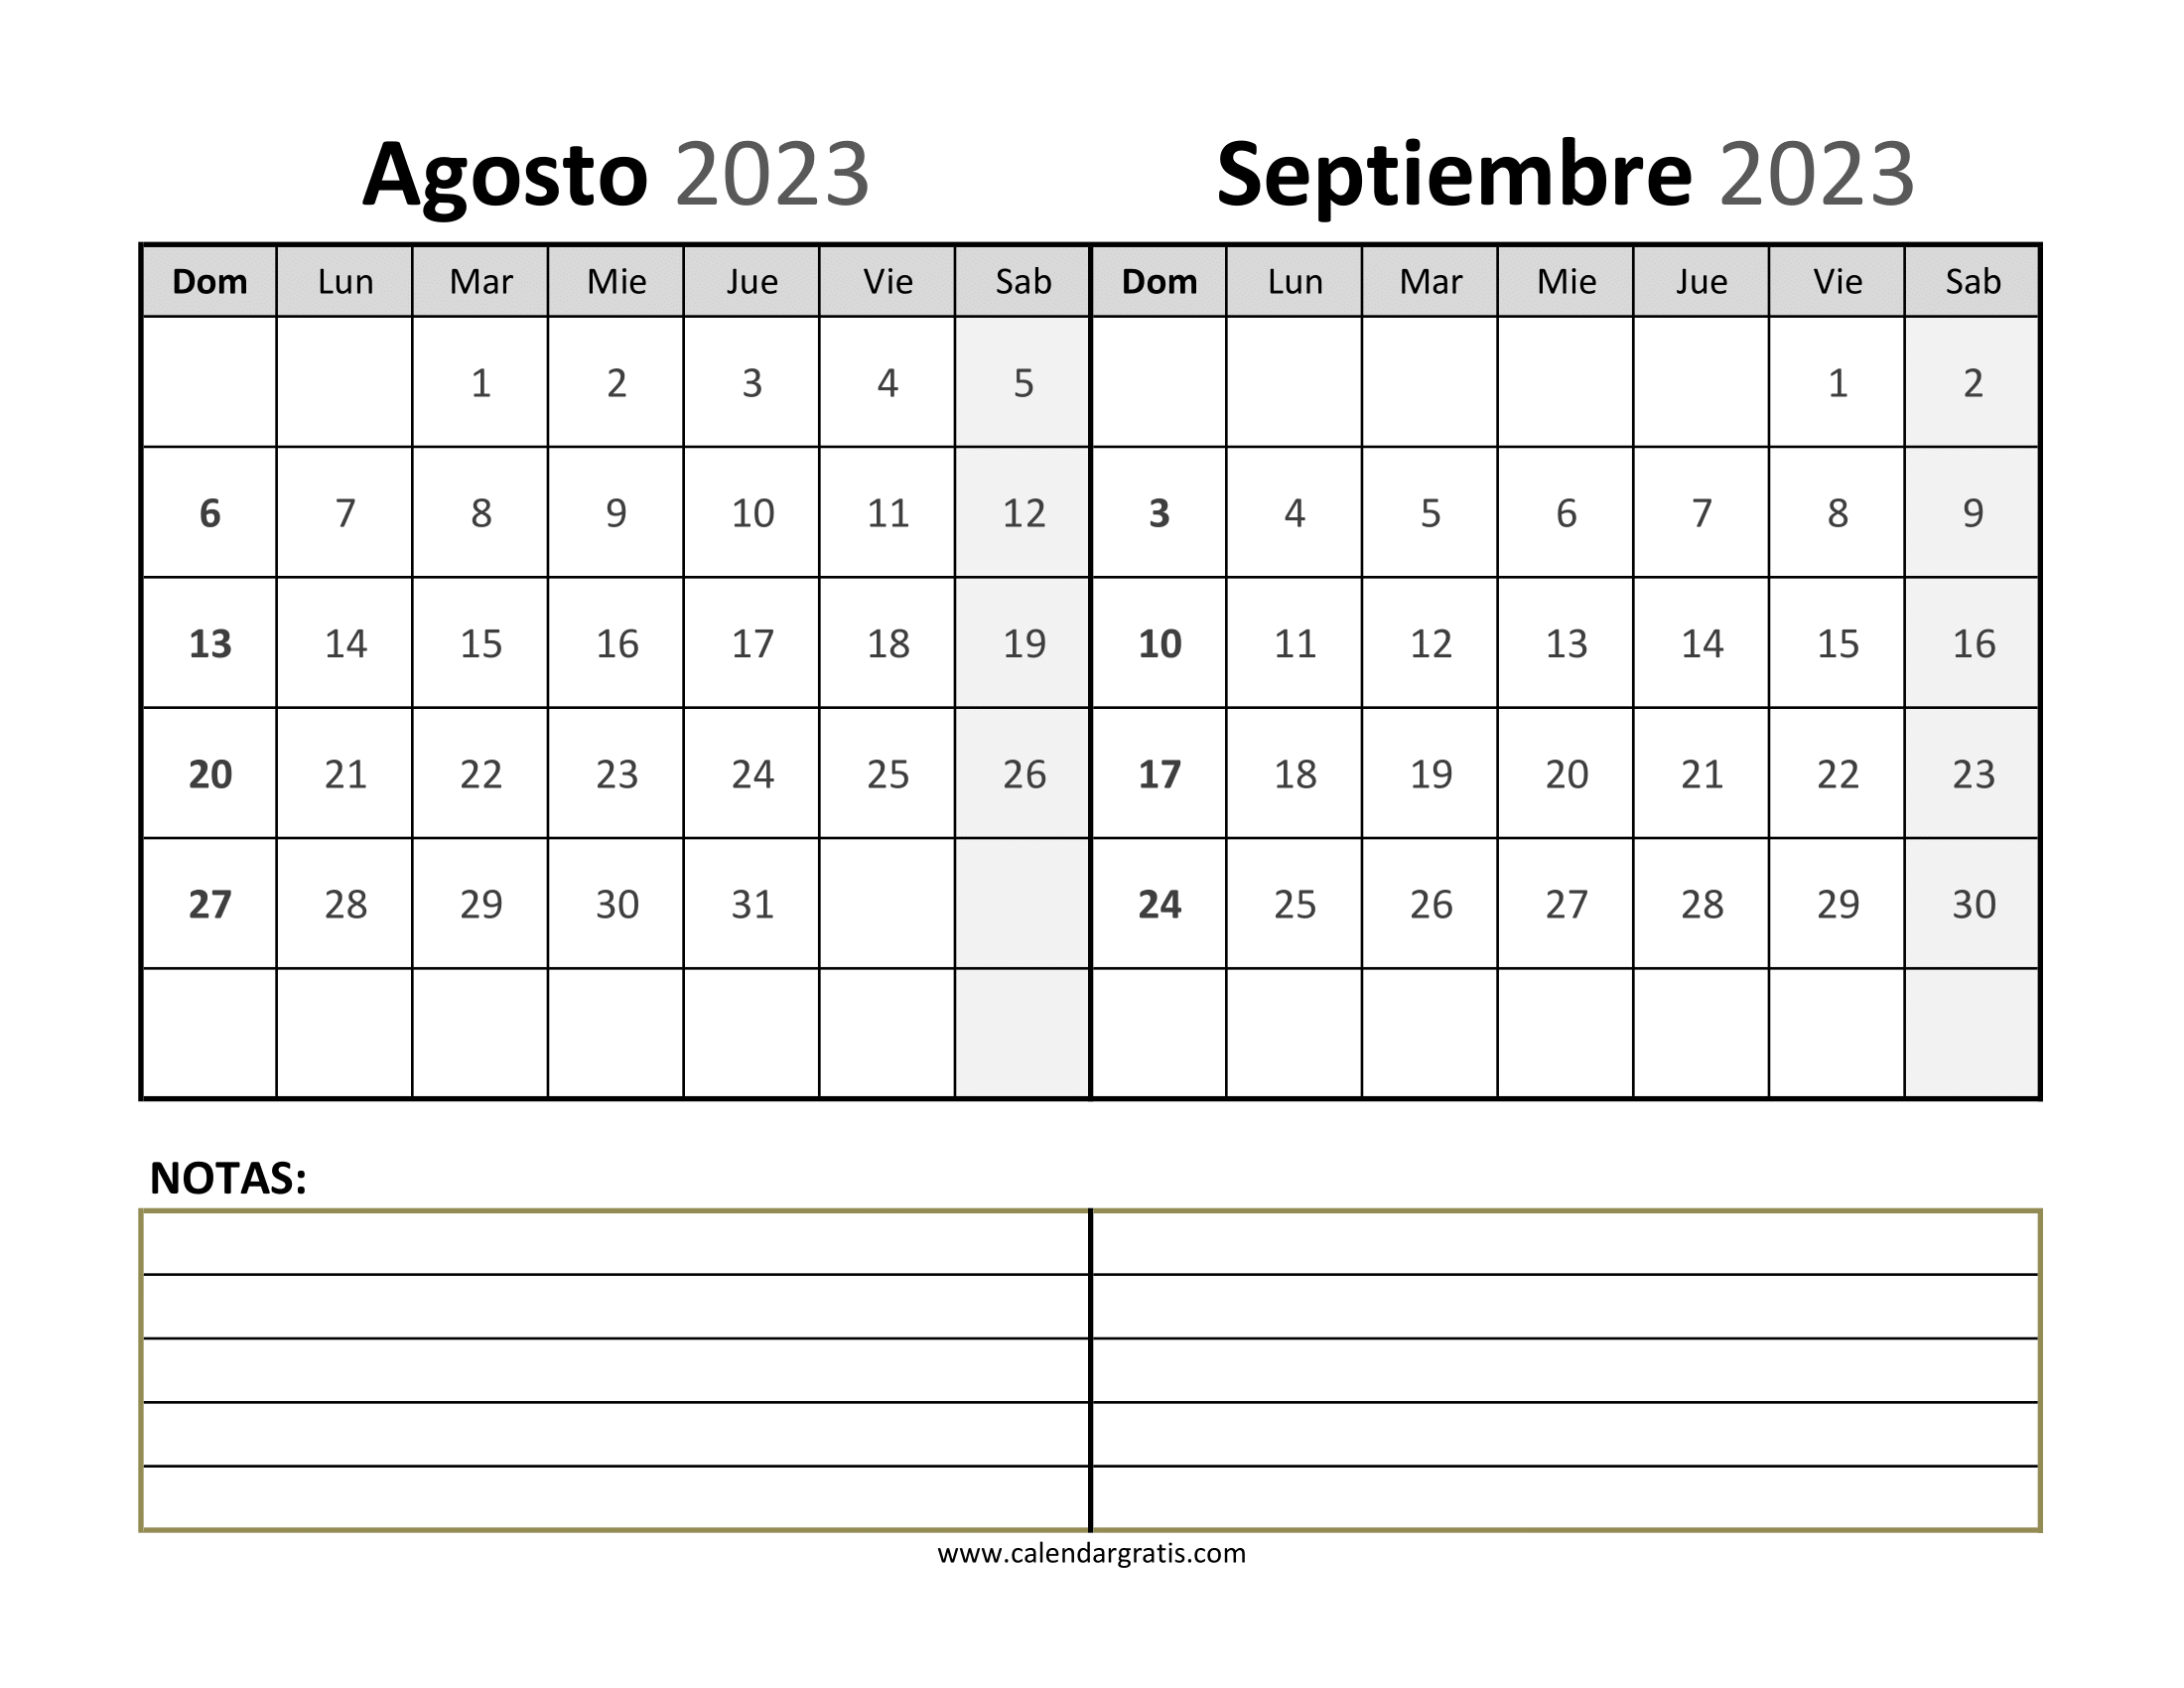 Calendario Agosto Septiembre 2023 Para Imprimir: Dos meses en una sola página